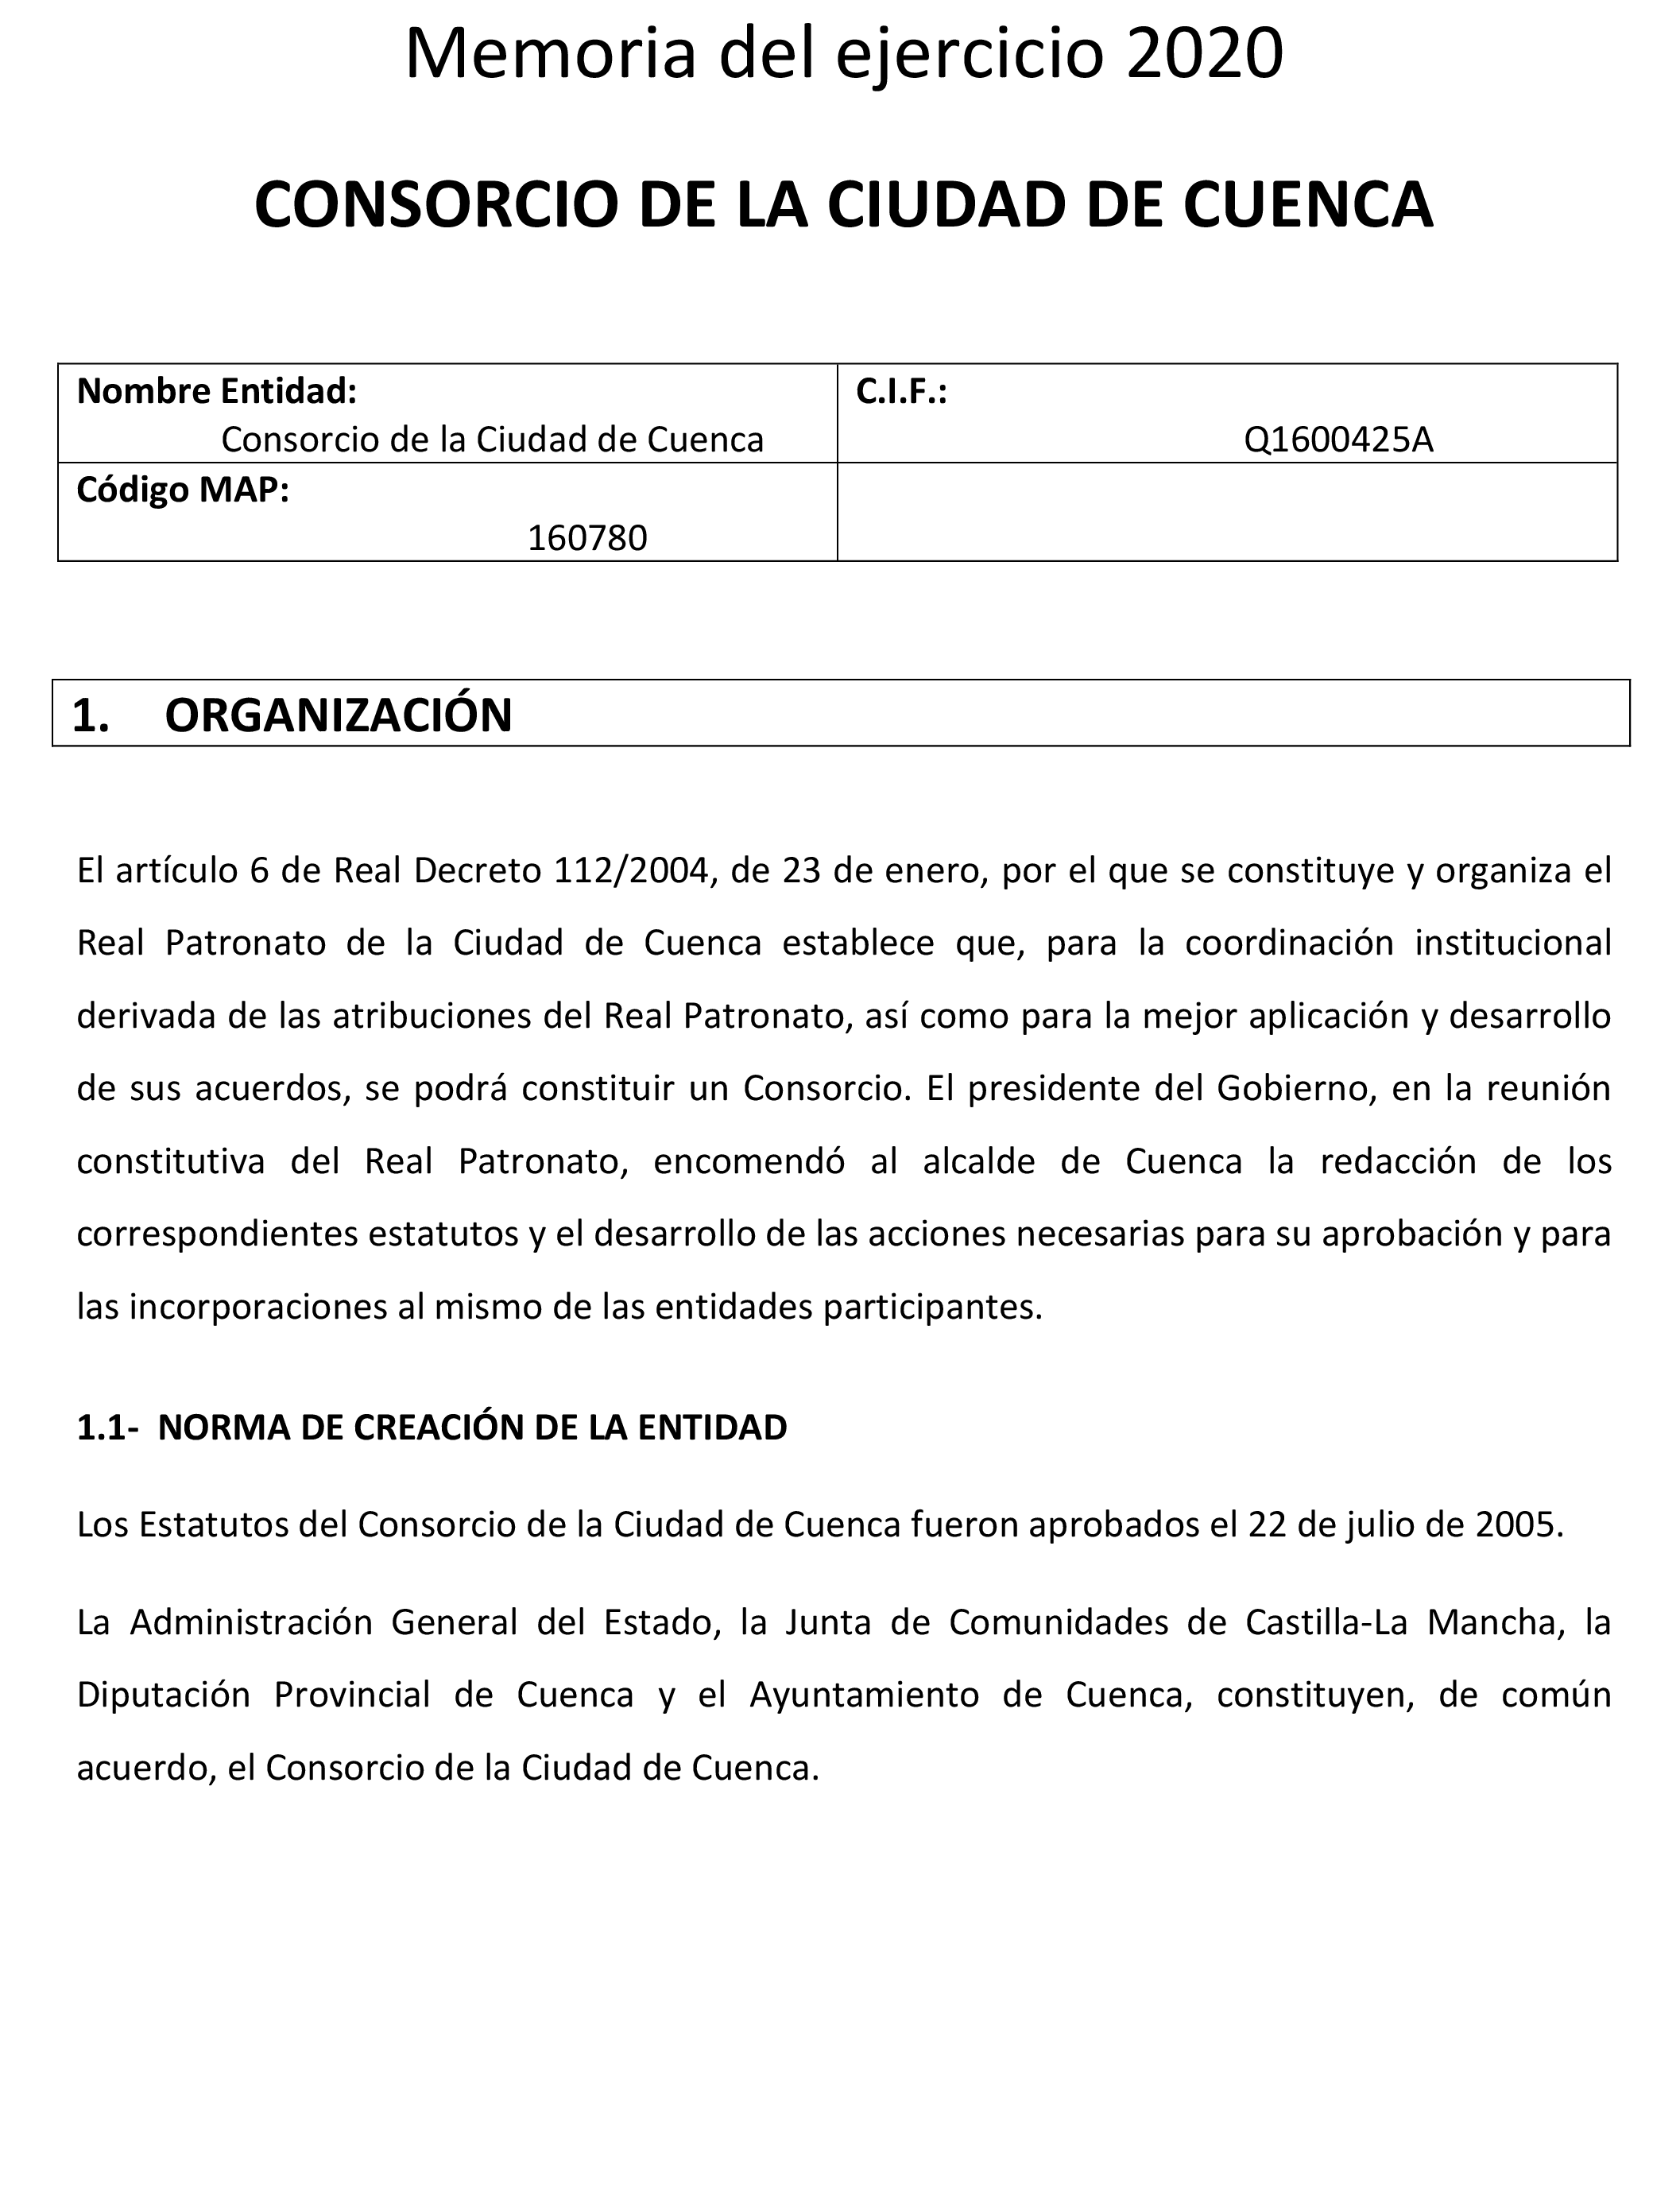 BOE-A-2021-14226 Resolución de 17 de agosto de 2021, del Consorcio de la  Ciudad de Cuenca, por la que se publican las cuentas anuales del ejercicio  2020 y el informe de auditoría.